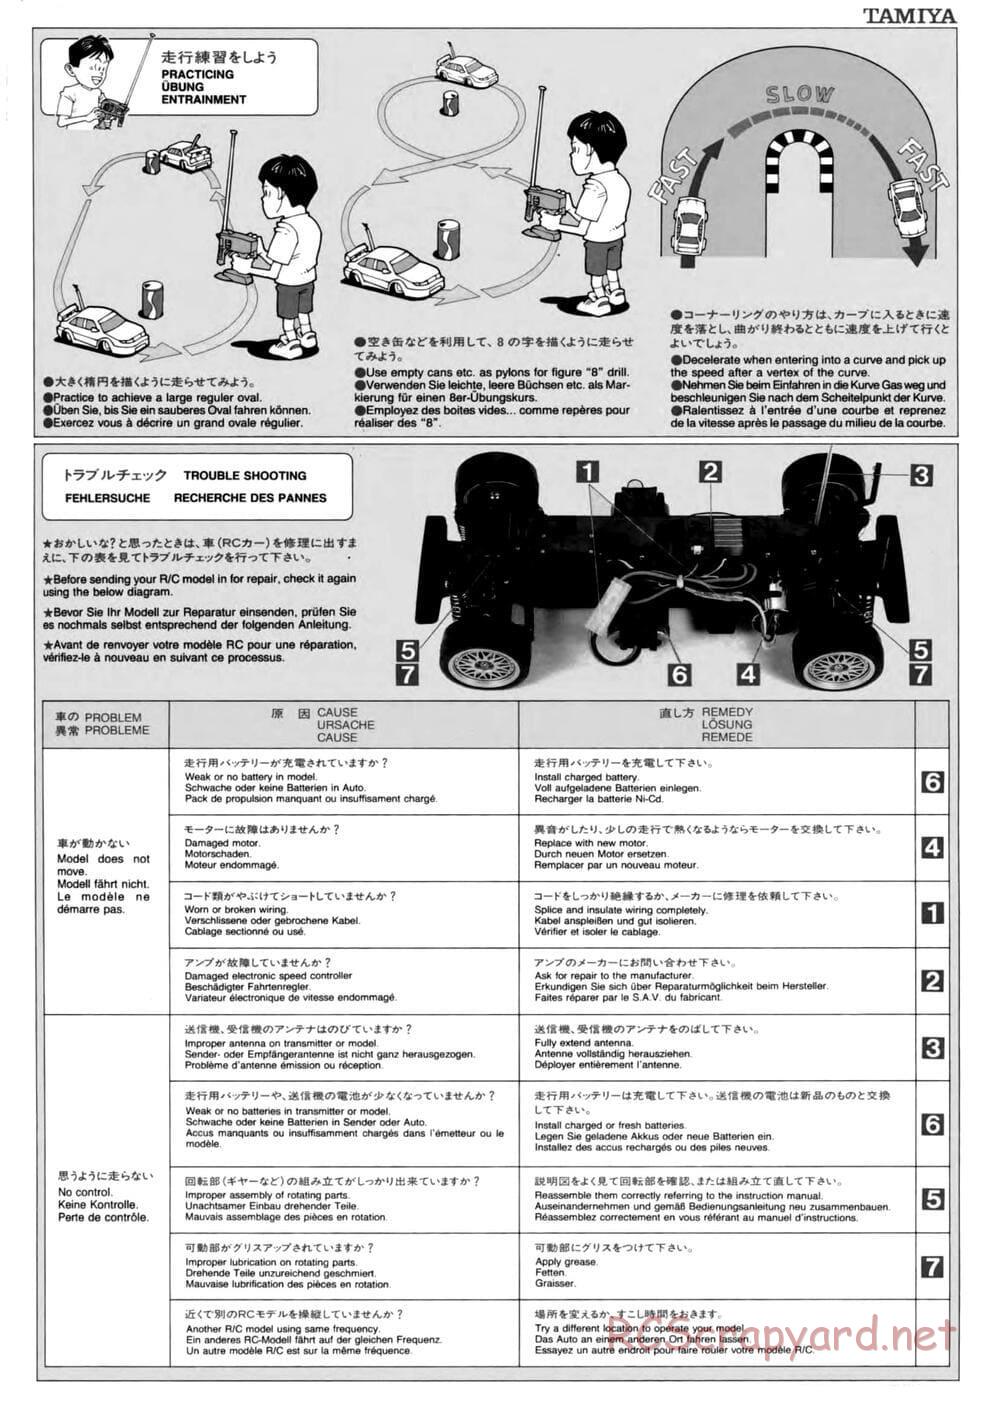 Tamiya - TL-01 Chassis - Manual - Page 16